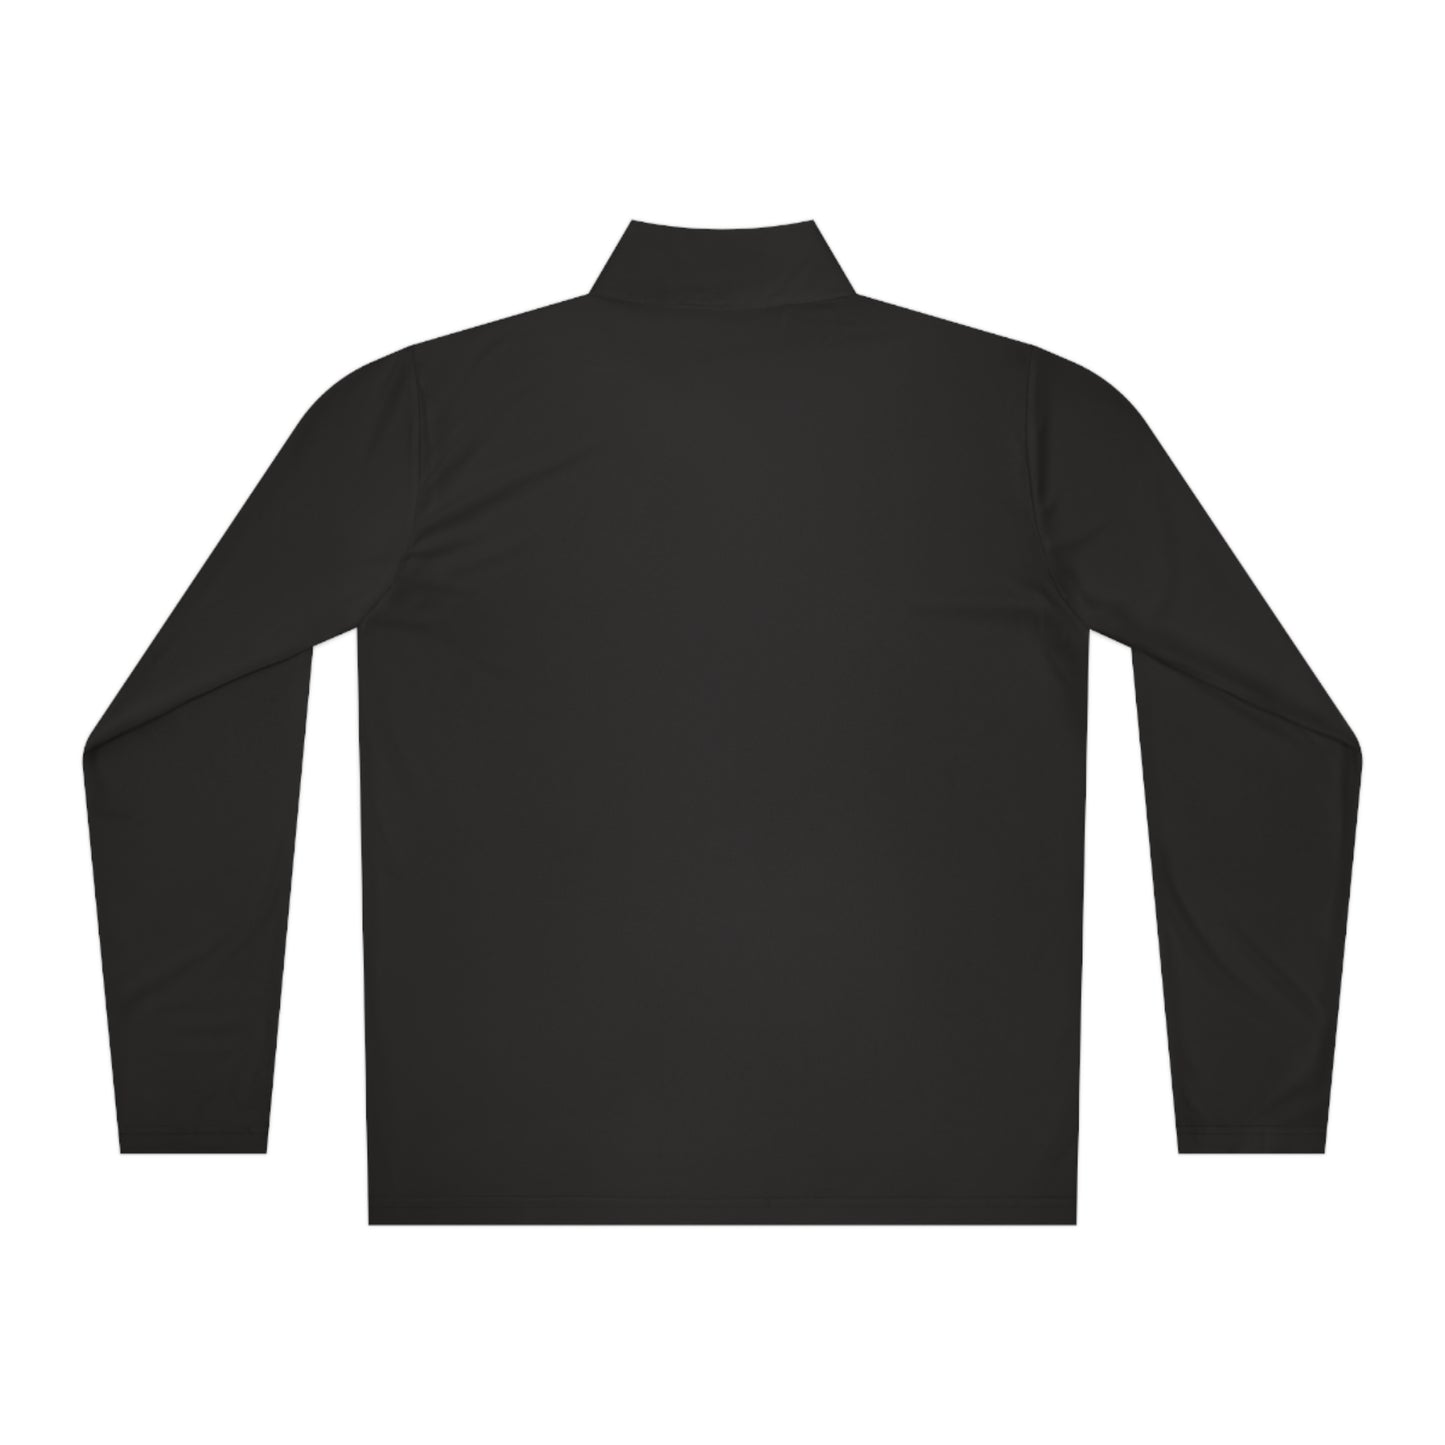 Unisex SCR Quarter-Zip Pullover